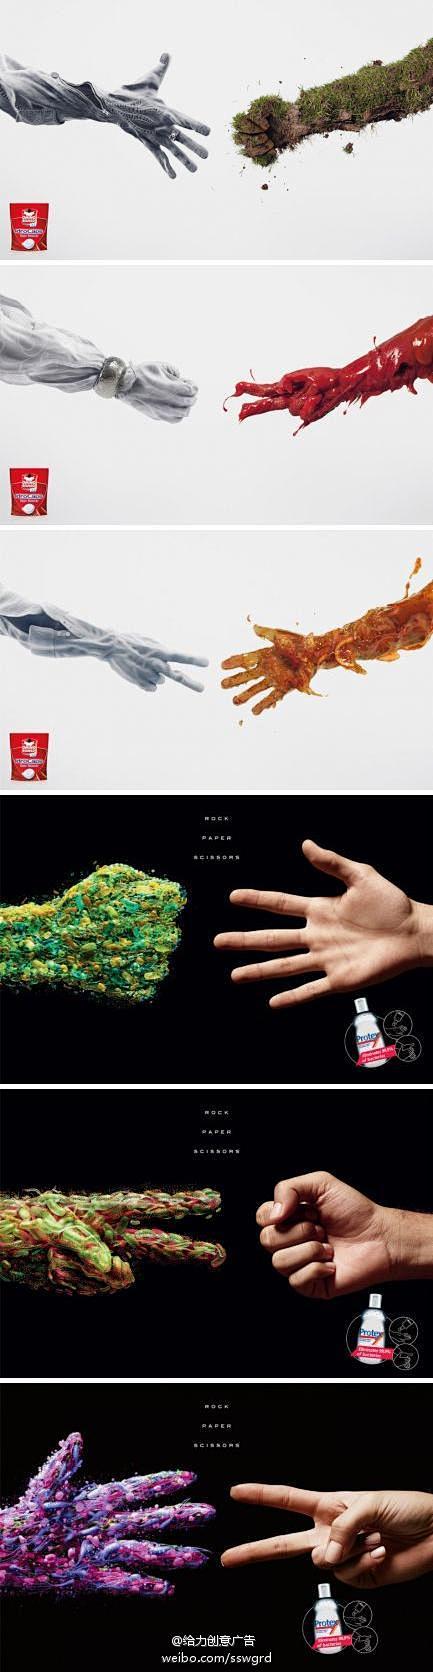 剪刀石头布——洗衣粉和洗手液的广告创意
...